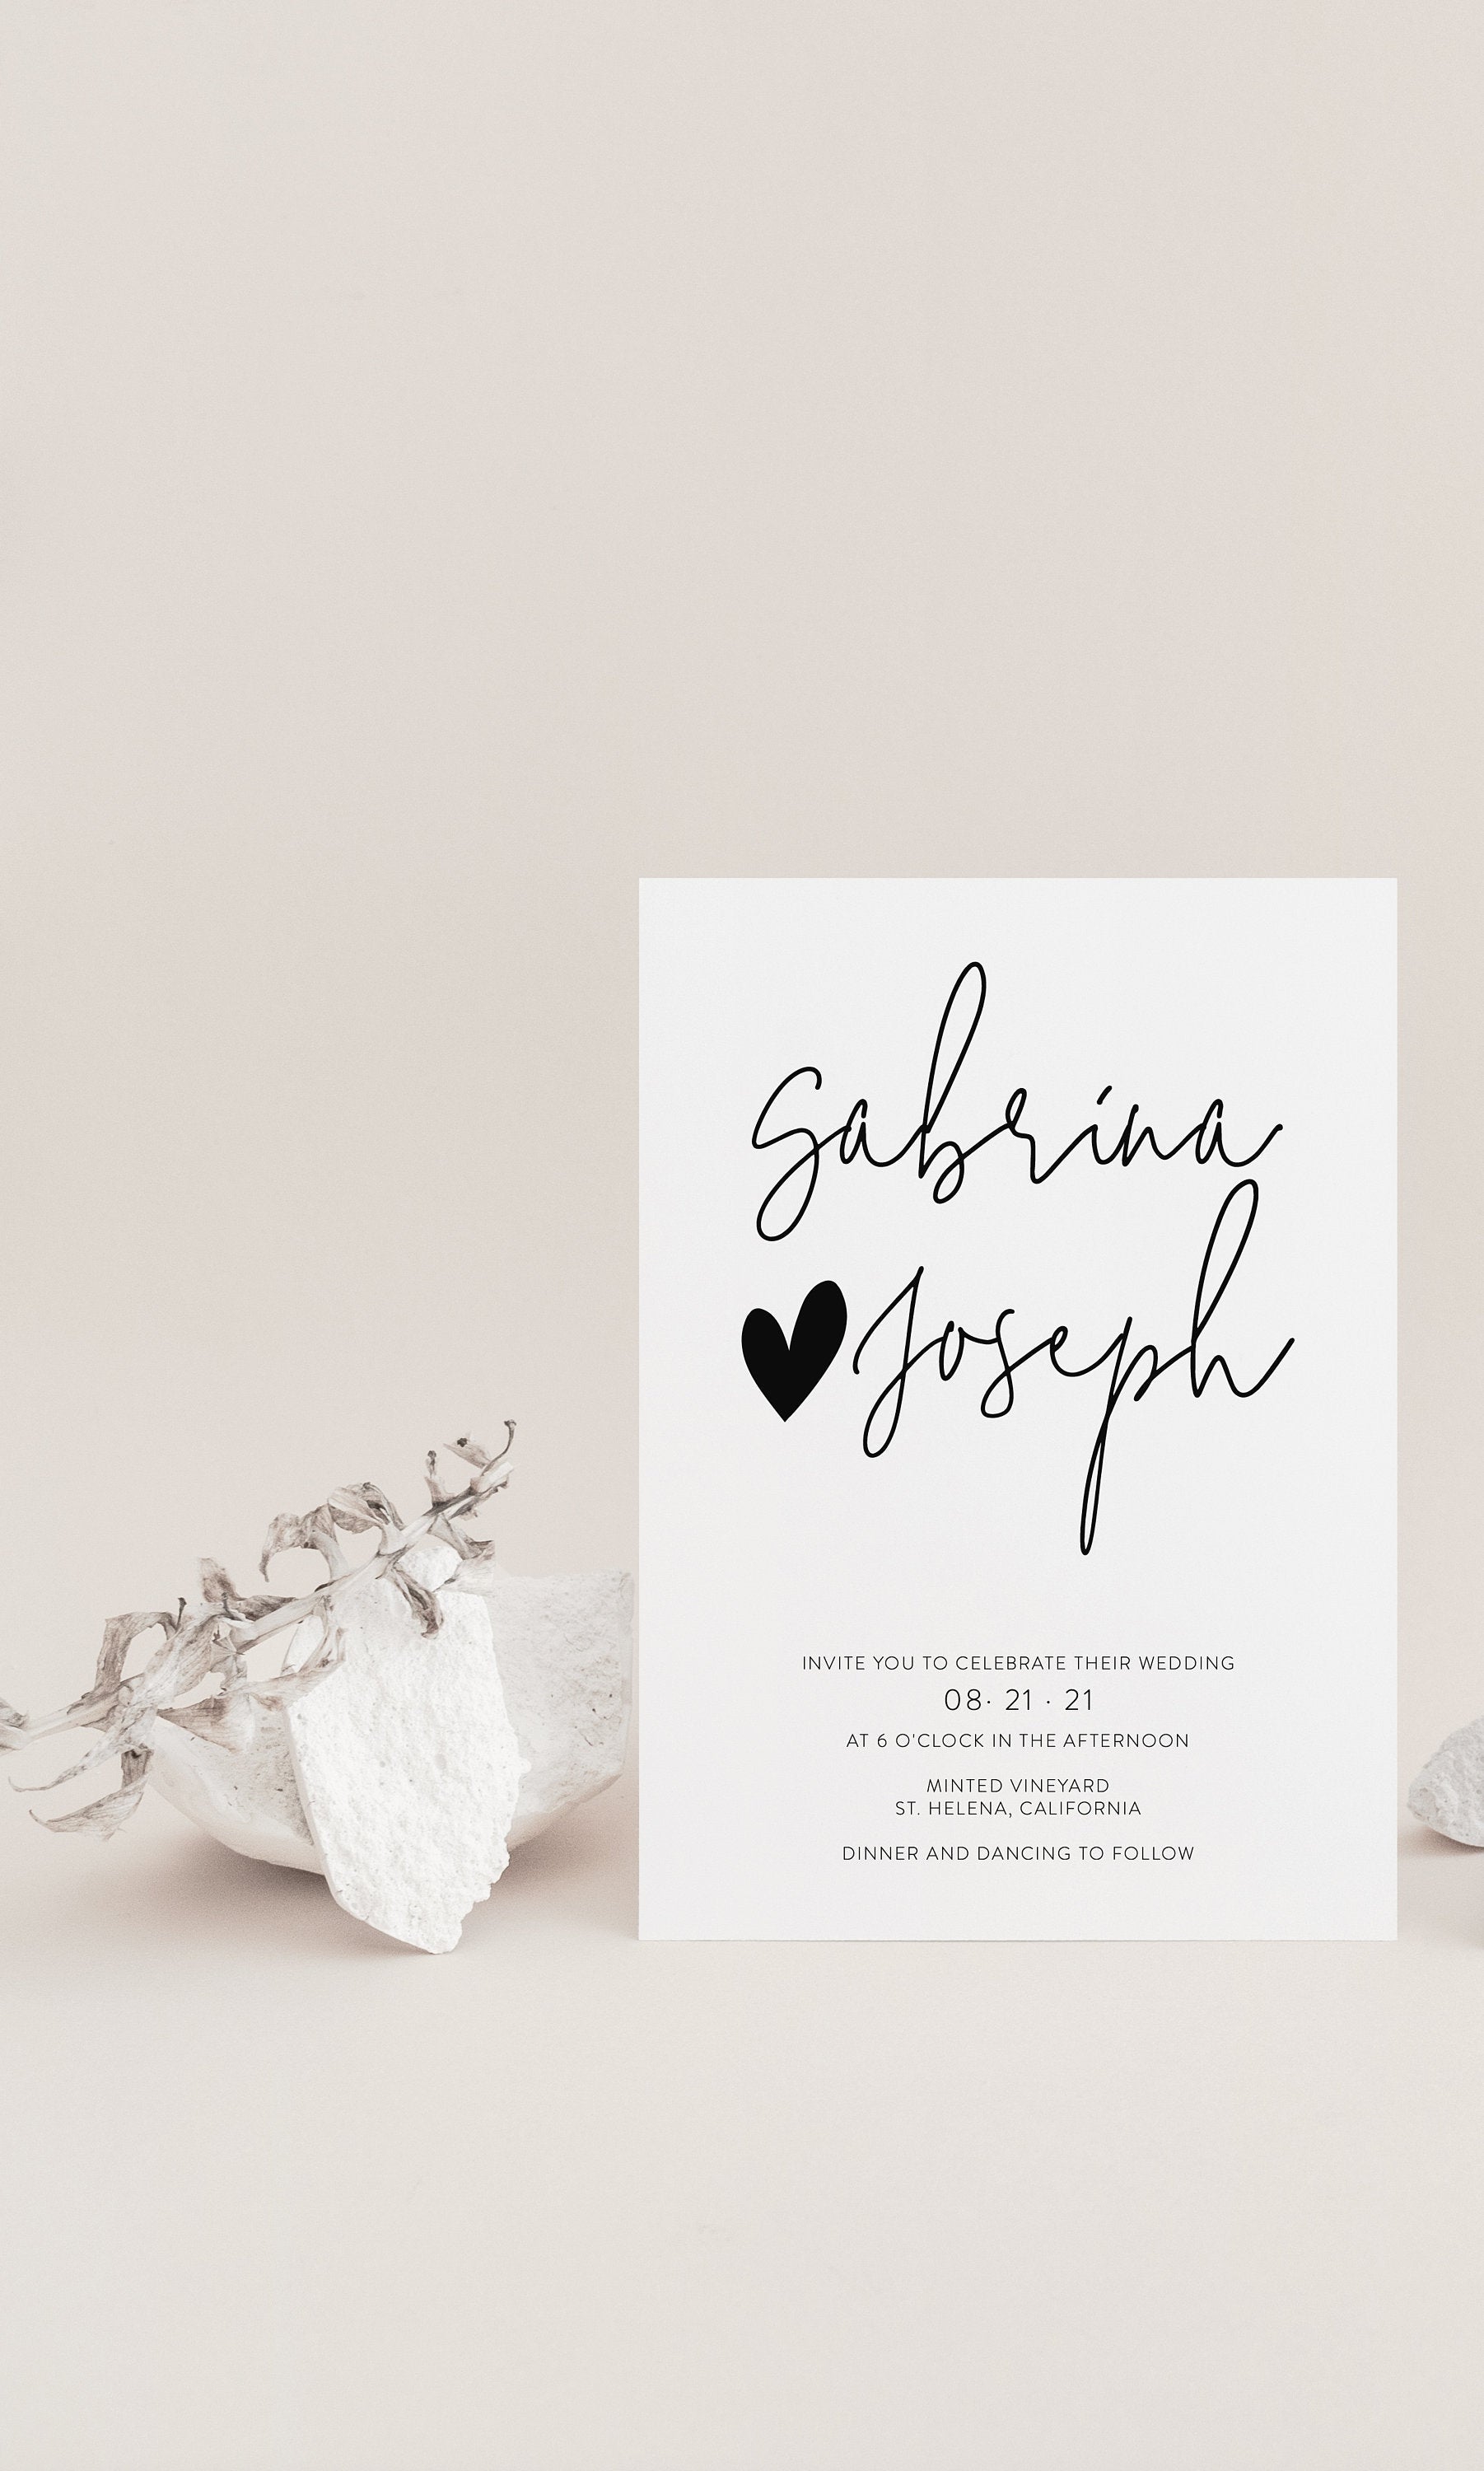 Minimalist Wedding Invitation Template, Printable Invite, Simple Wedding Invites Editable Wedding Invitations - GAB WEDDING INVITATIONS SAVVY PAPER CO